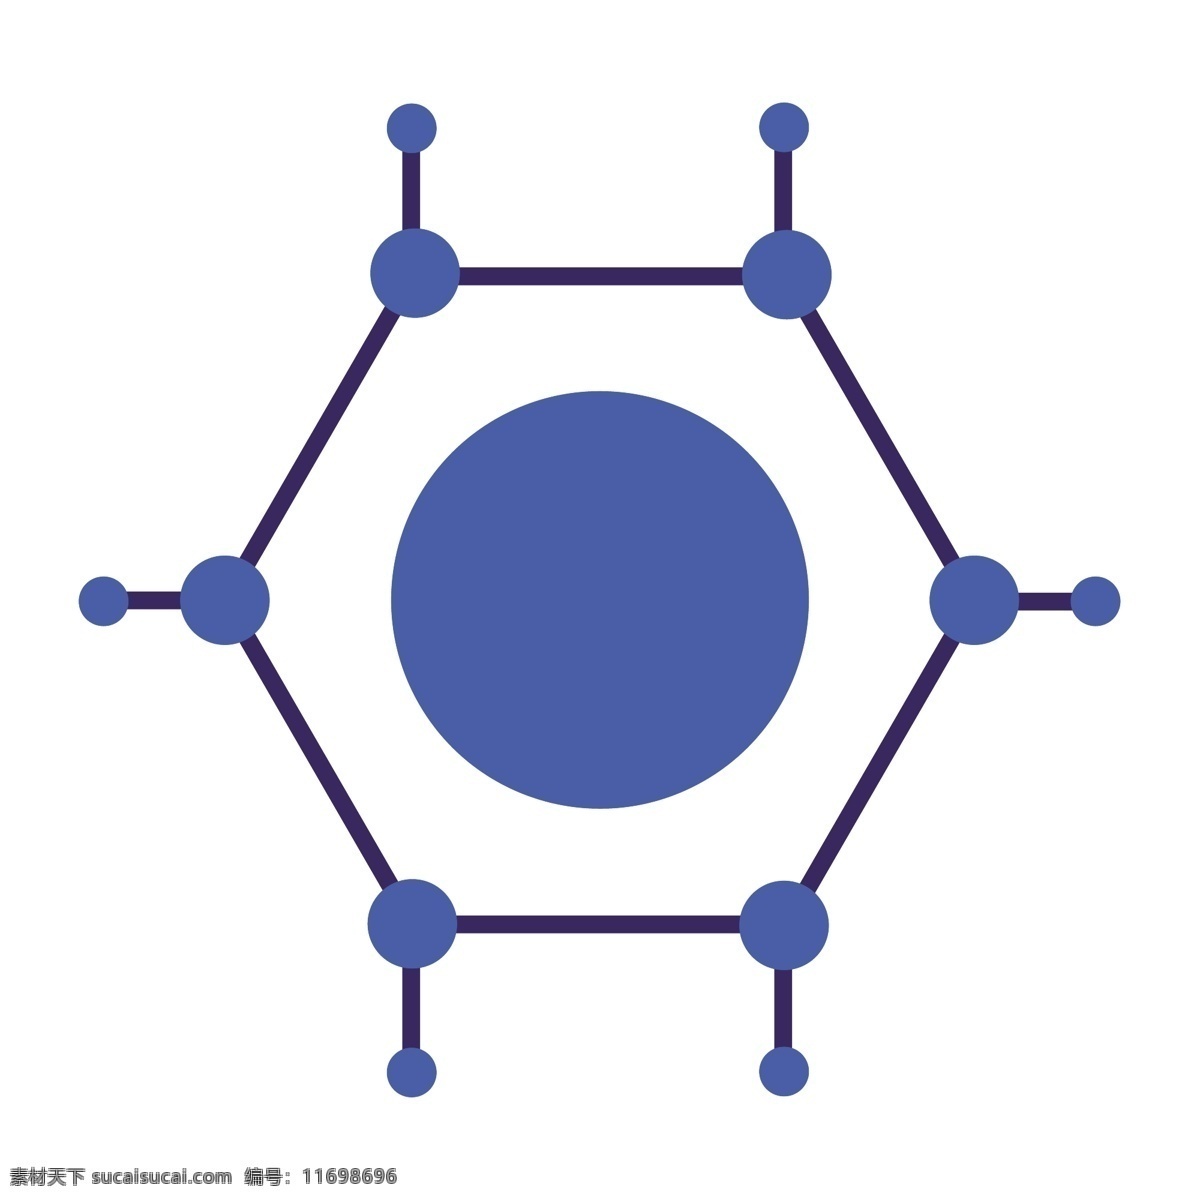 蓝色 多边形 基因 机构 卡通 图标 科技 圆点 网络 工程 矢量图 扁平化 卡通图标